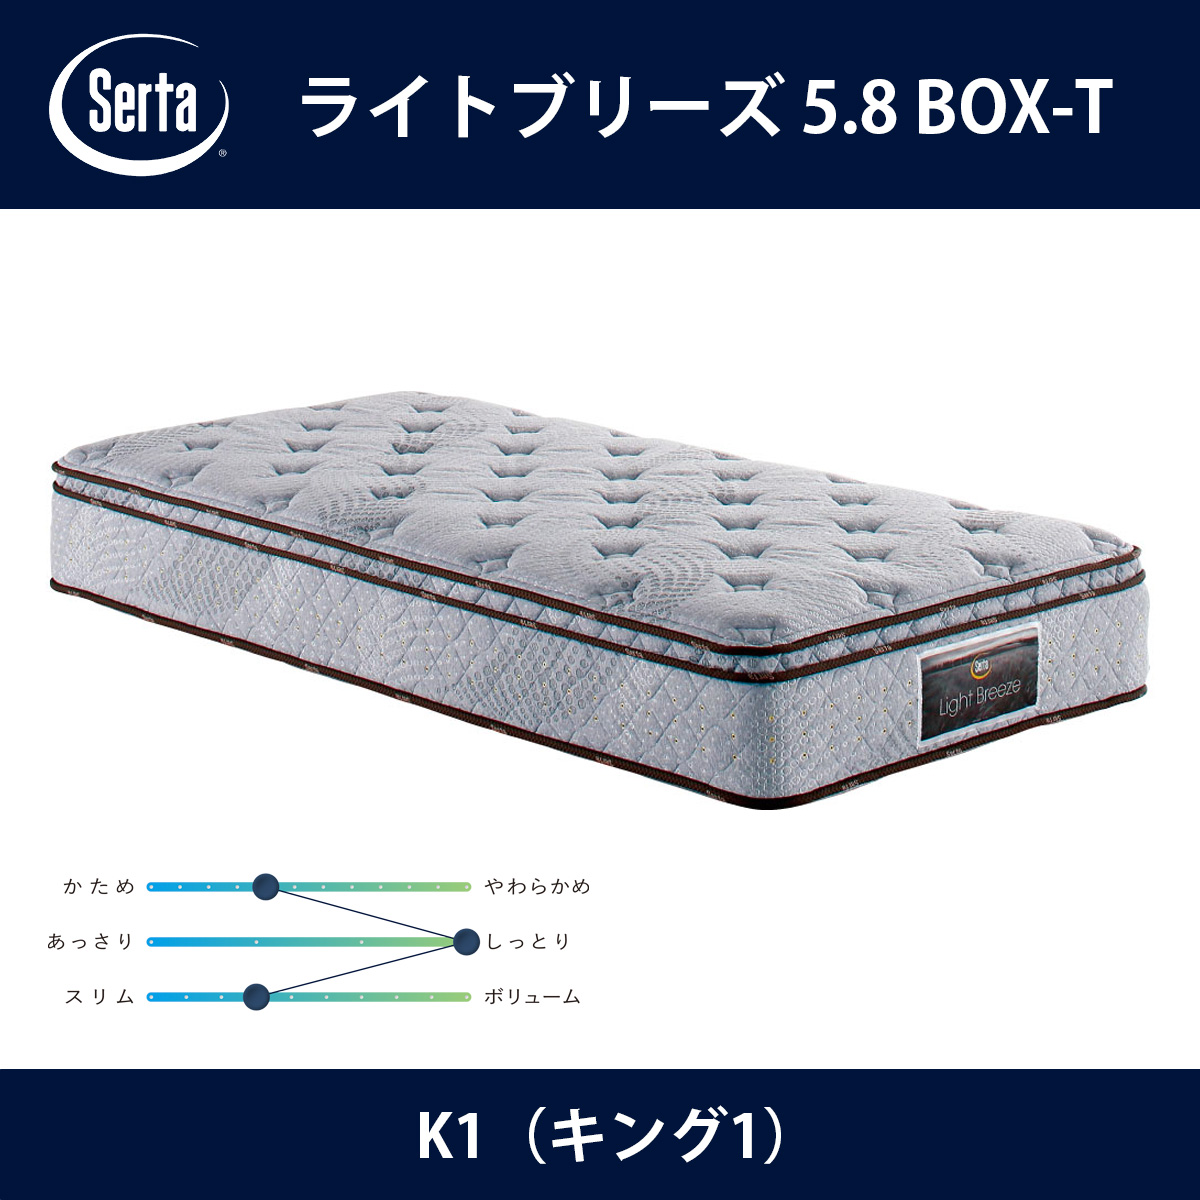 サータ Serta マットレス ライトブリーズ 5.8 BOX-T K1（キング1）サイズ Light Breeze 5.8インチ樽型 3ゾーン交互配列 breathfort BOXトップ ドリームベッド